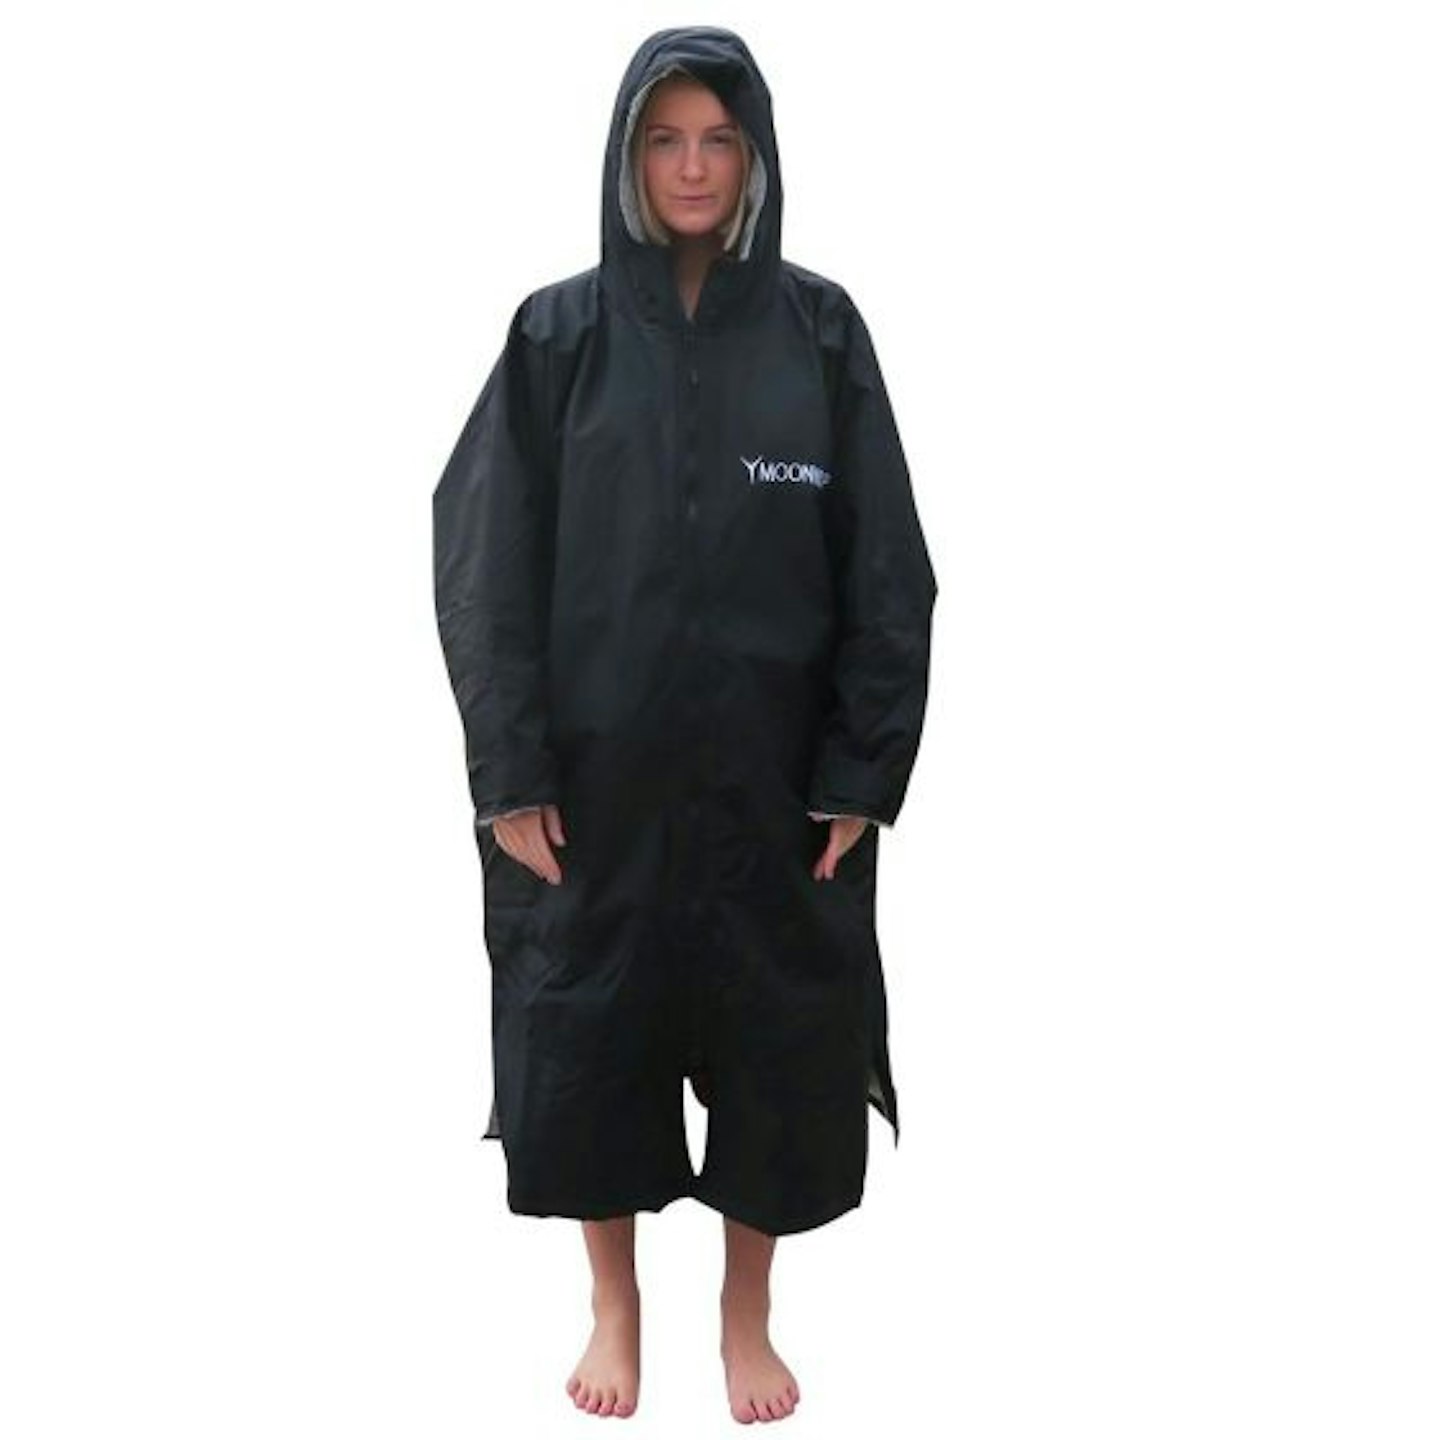 Moonwrap waterproof long sleeve changing robe